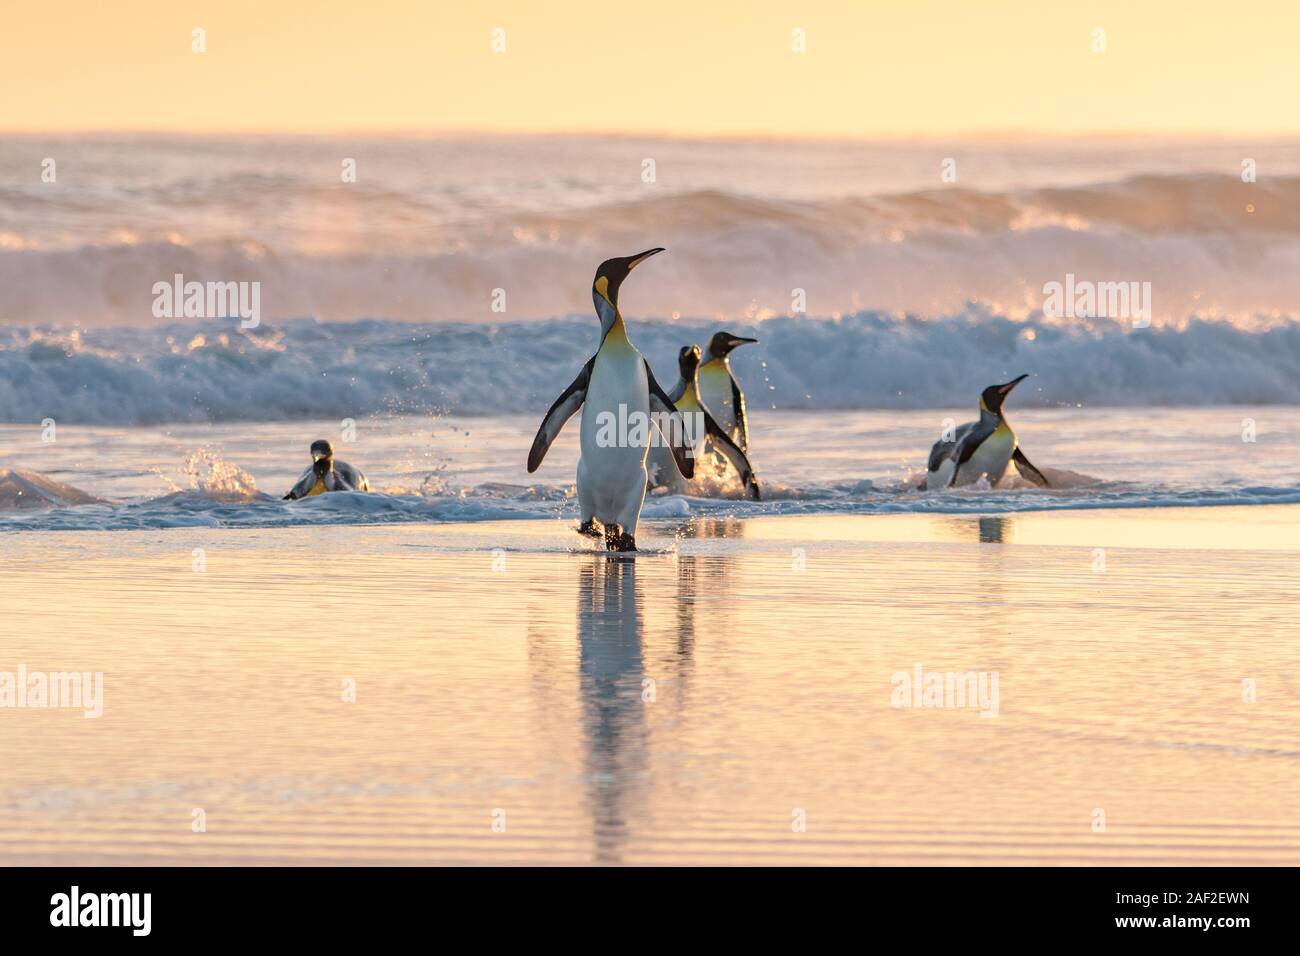 Un grupo de pingüinos rey emergiendo del mar, al amanecer, en el punto de voluntariado de las Islas Malvinas Foto de stock